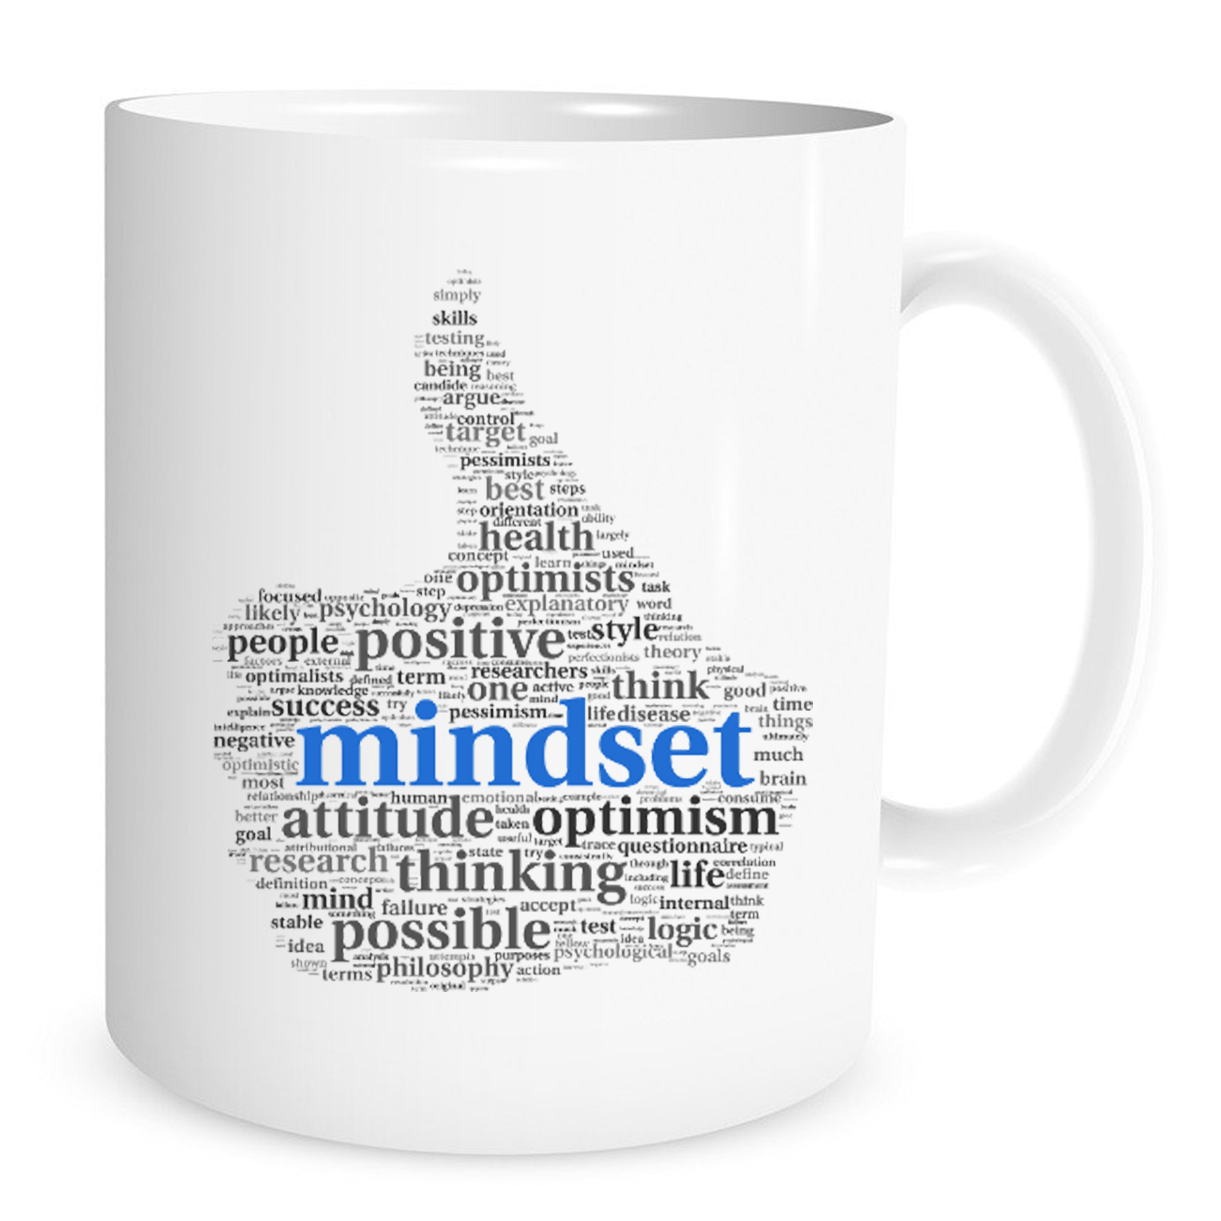 Mind Set - 11 Oz Coffee Mug